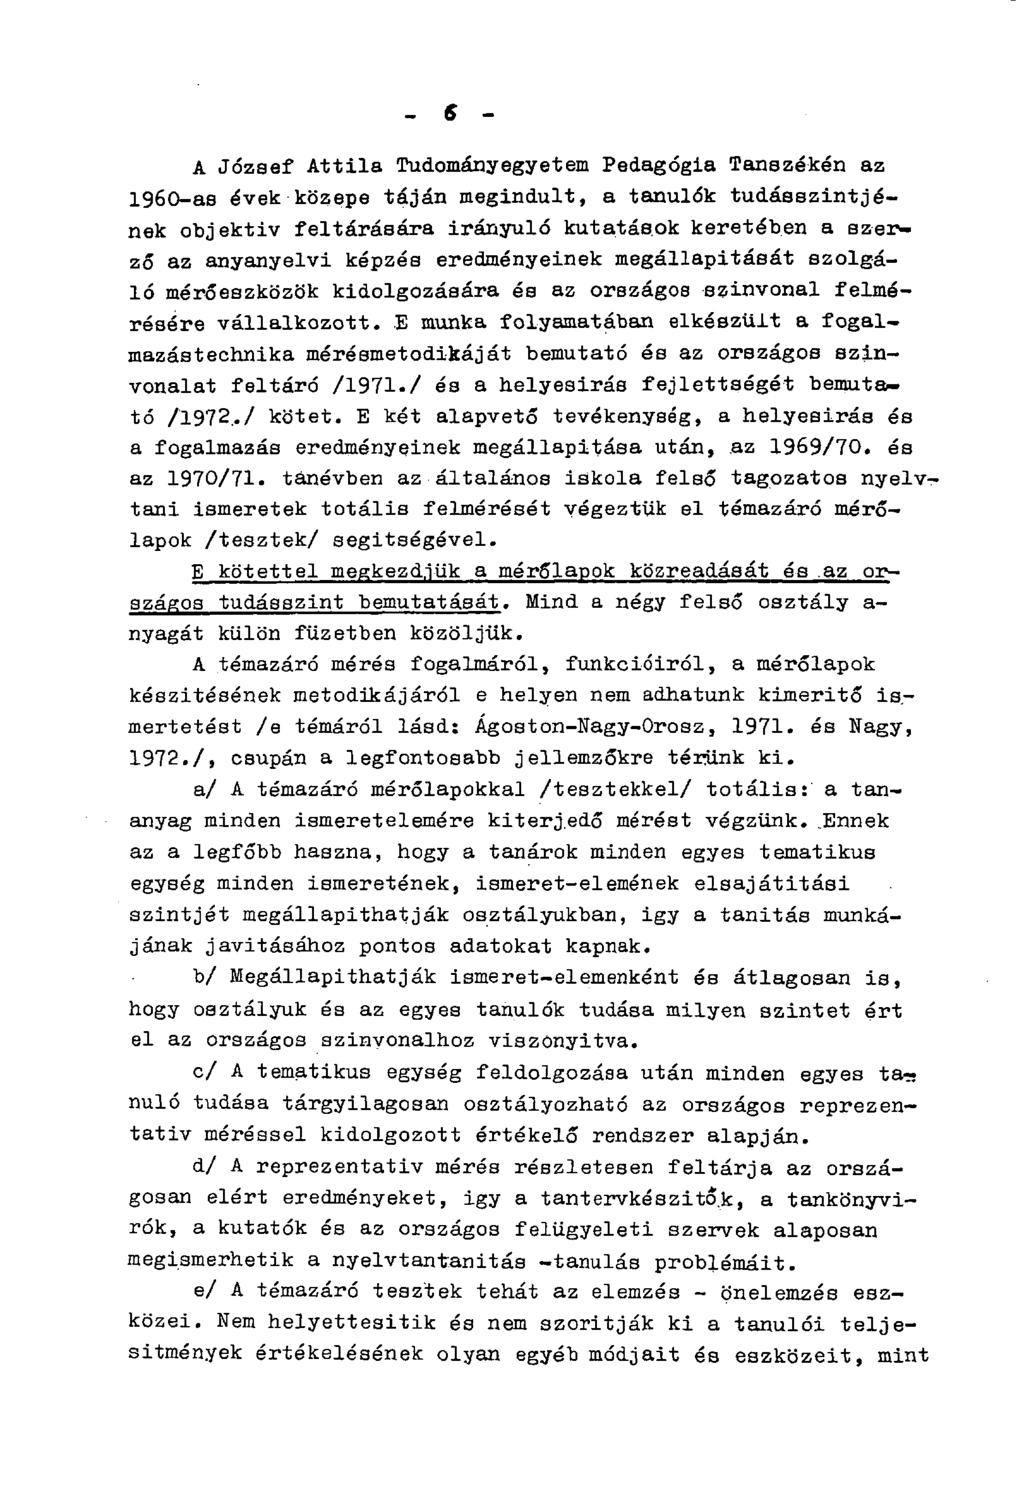 - 6 - A József Attila Tudományegyetem Pedagógia Tanszékén az 1960-as évek közepe táján megindult, a tanulók tudásszintjének objektiv feltárására irányuló kutatások keretében a szerző az anyanyelvi